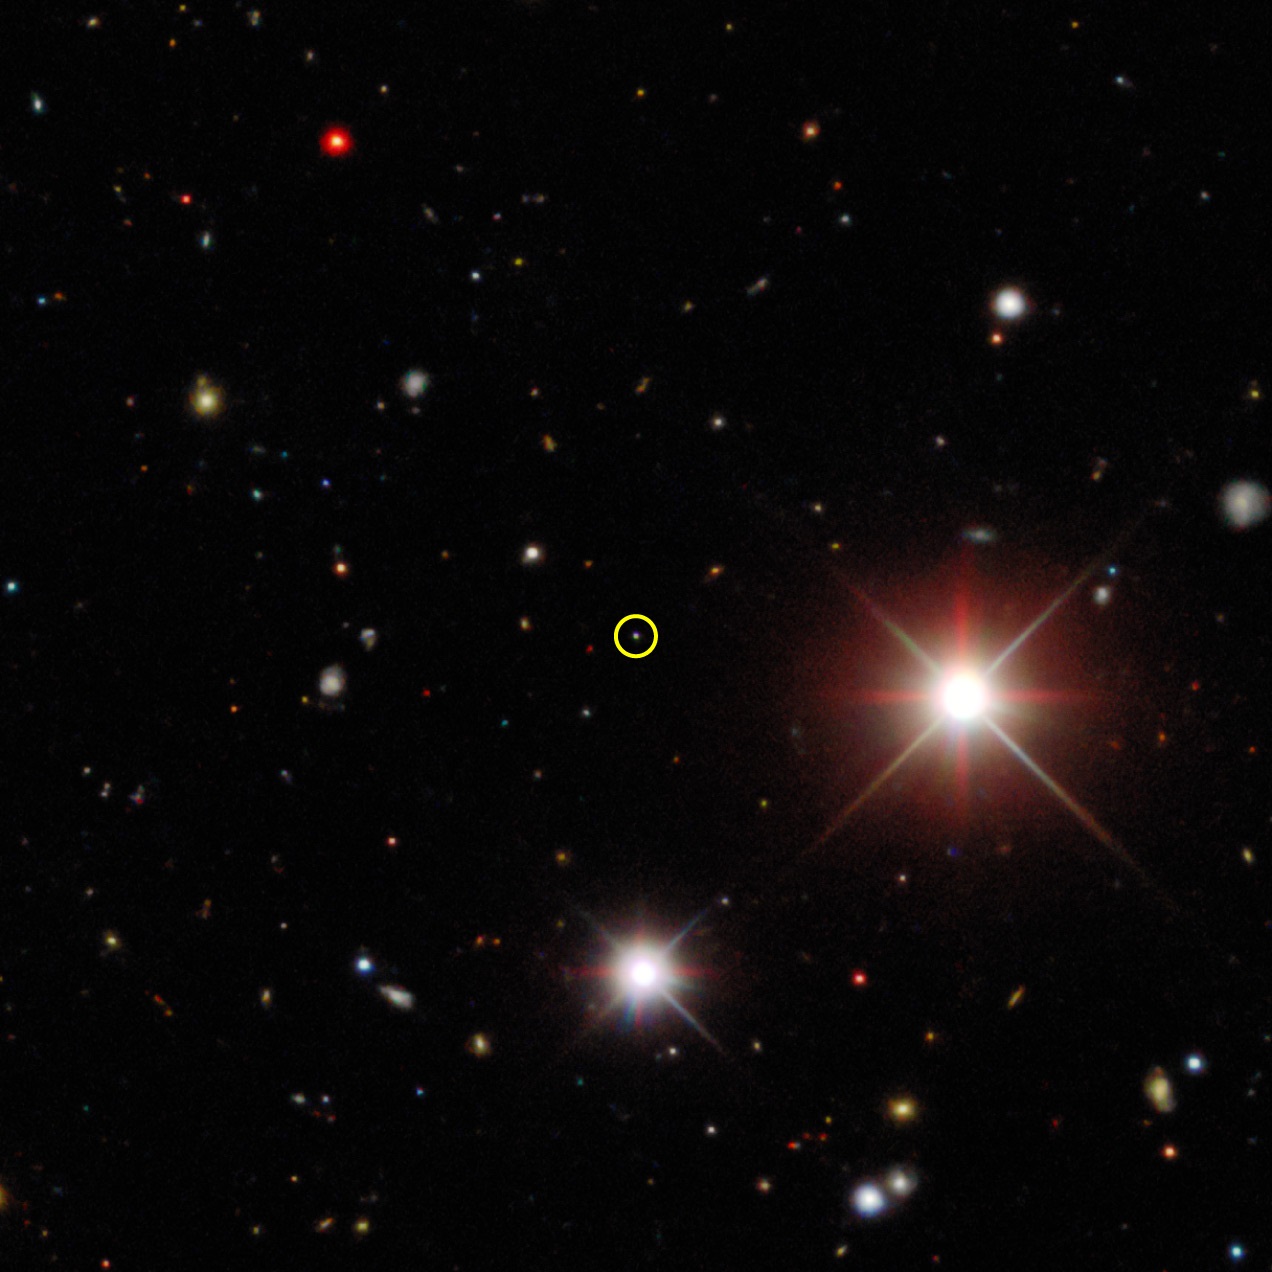 Bức ảnh kết hợp từ Khảo cứu Năng lượng tối này chụp sao chổi Bernardinelli-Bernstein (khoanh vàng) tháng 10/2017, khi nó đang cách 25 đơn vị thiên văn (AU). Ảnh: Khảo cứu Năng lượng tối/DOE/FNAL/DECam/CTIO/NOIRLab/NSF/AURA/P. Bernardinelli & G. Bernstein (UPenn)/DESI Legacy Imaging Surveys